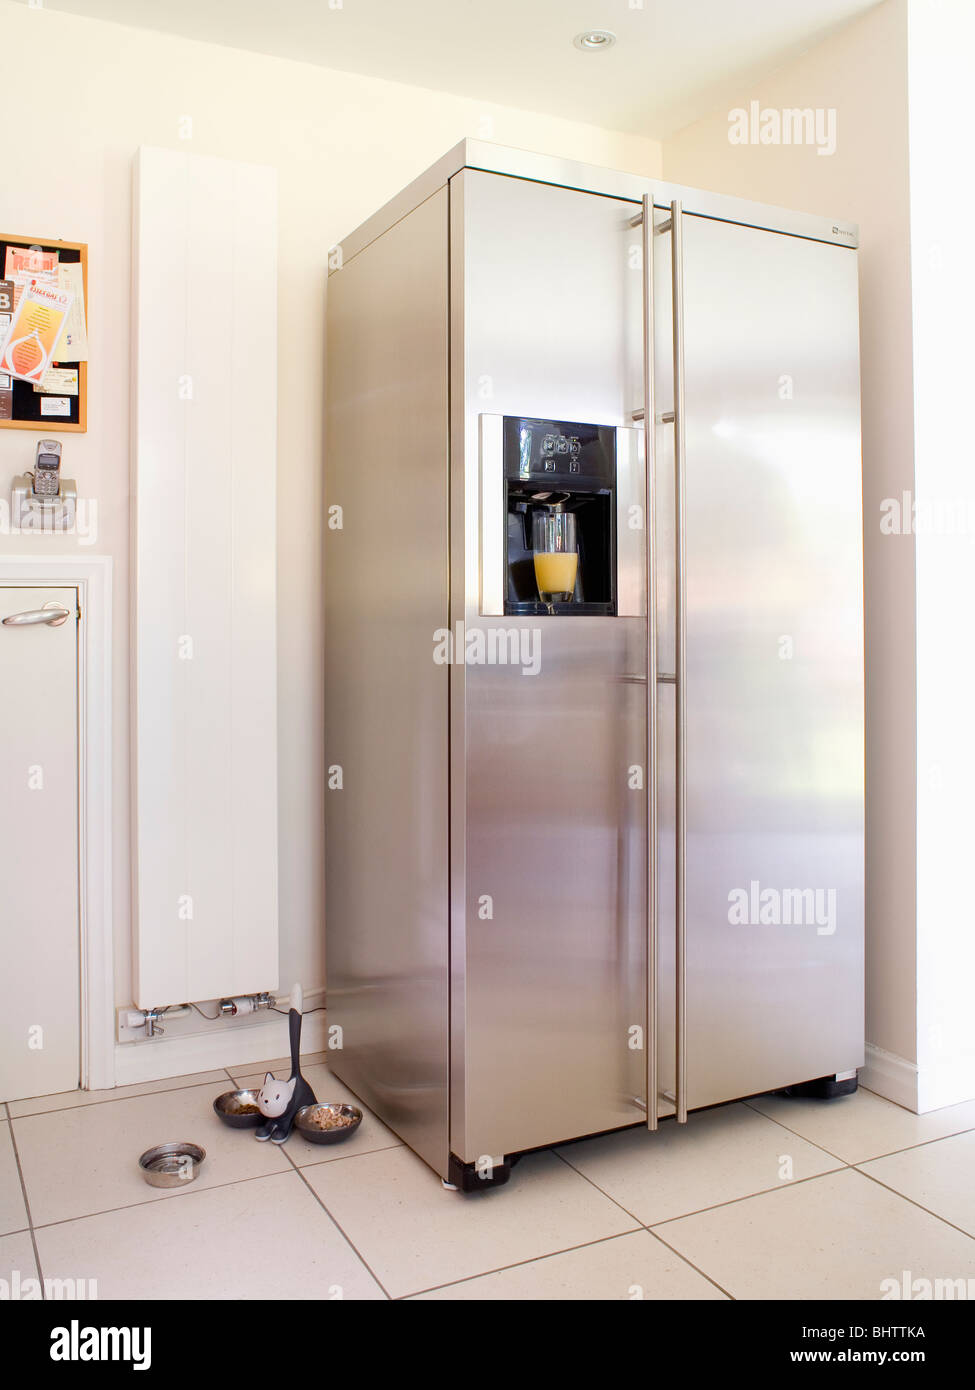 Grande e di stile americano in acciaio inox frigo-congelatore verticale  accanto al radiatore bianco in cucina moderna Foto stock - Alamy